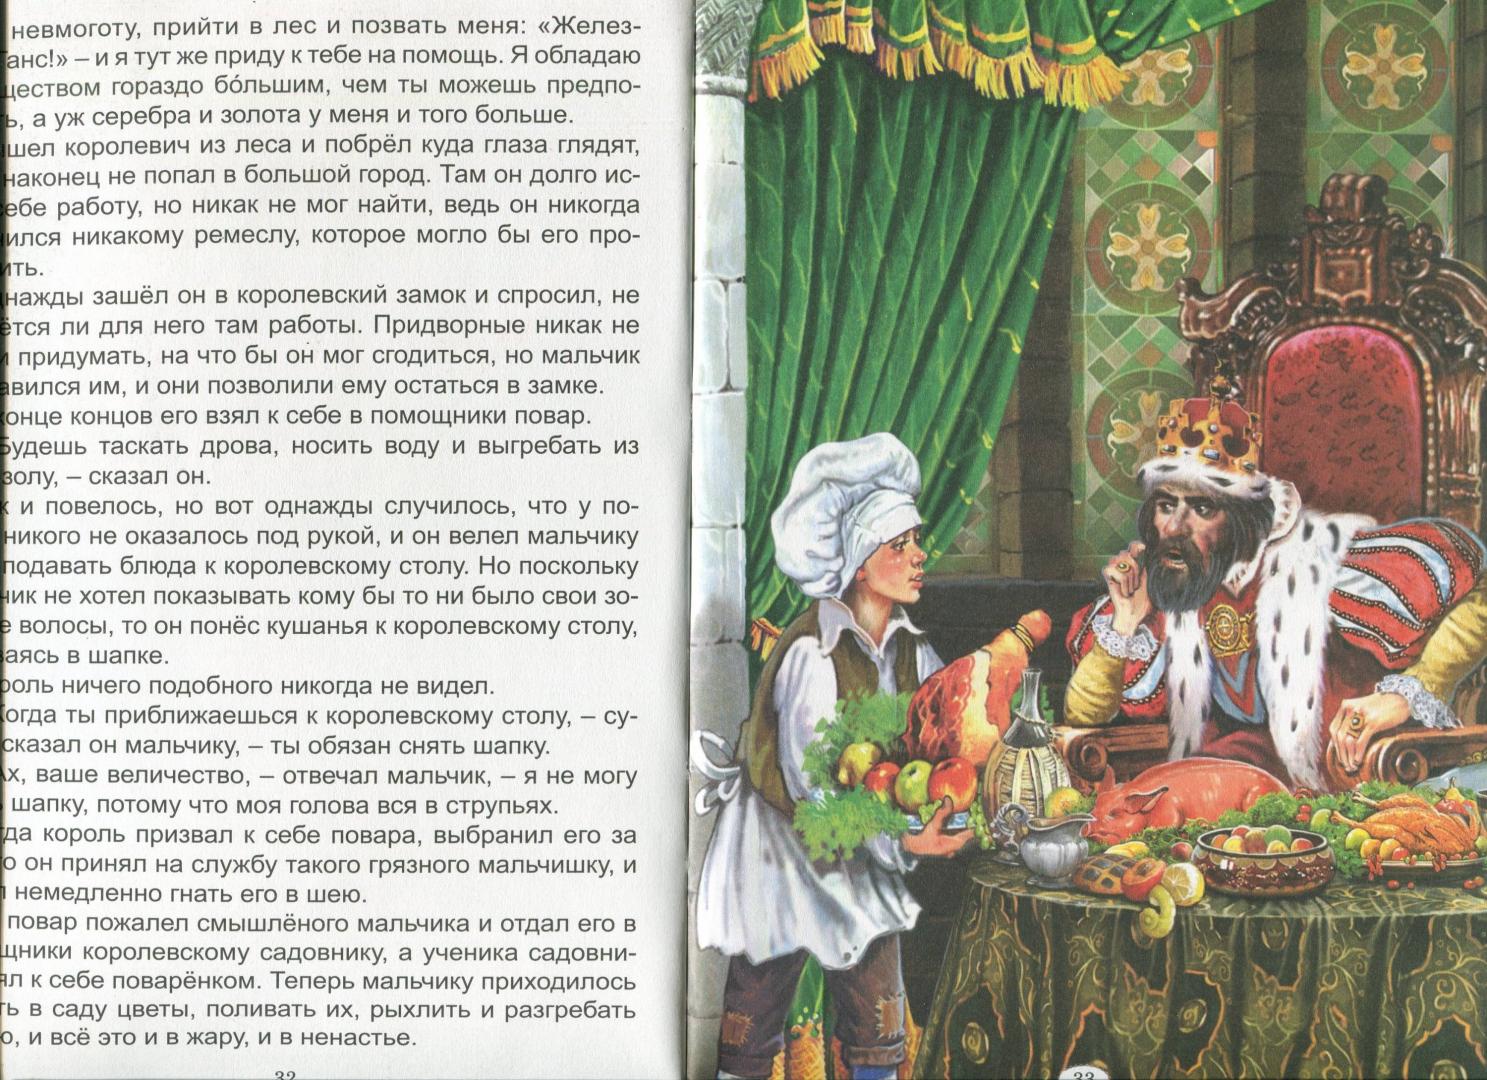 Иллюстрация 19 из 27 для Королевские сказки - Гримм, Андерсен, Лабулэ | Лабиринт - книги. Источник: Лабиринт